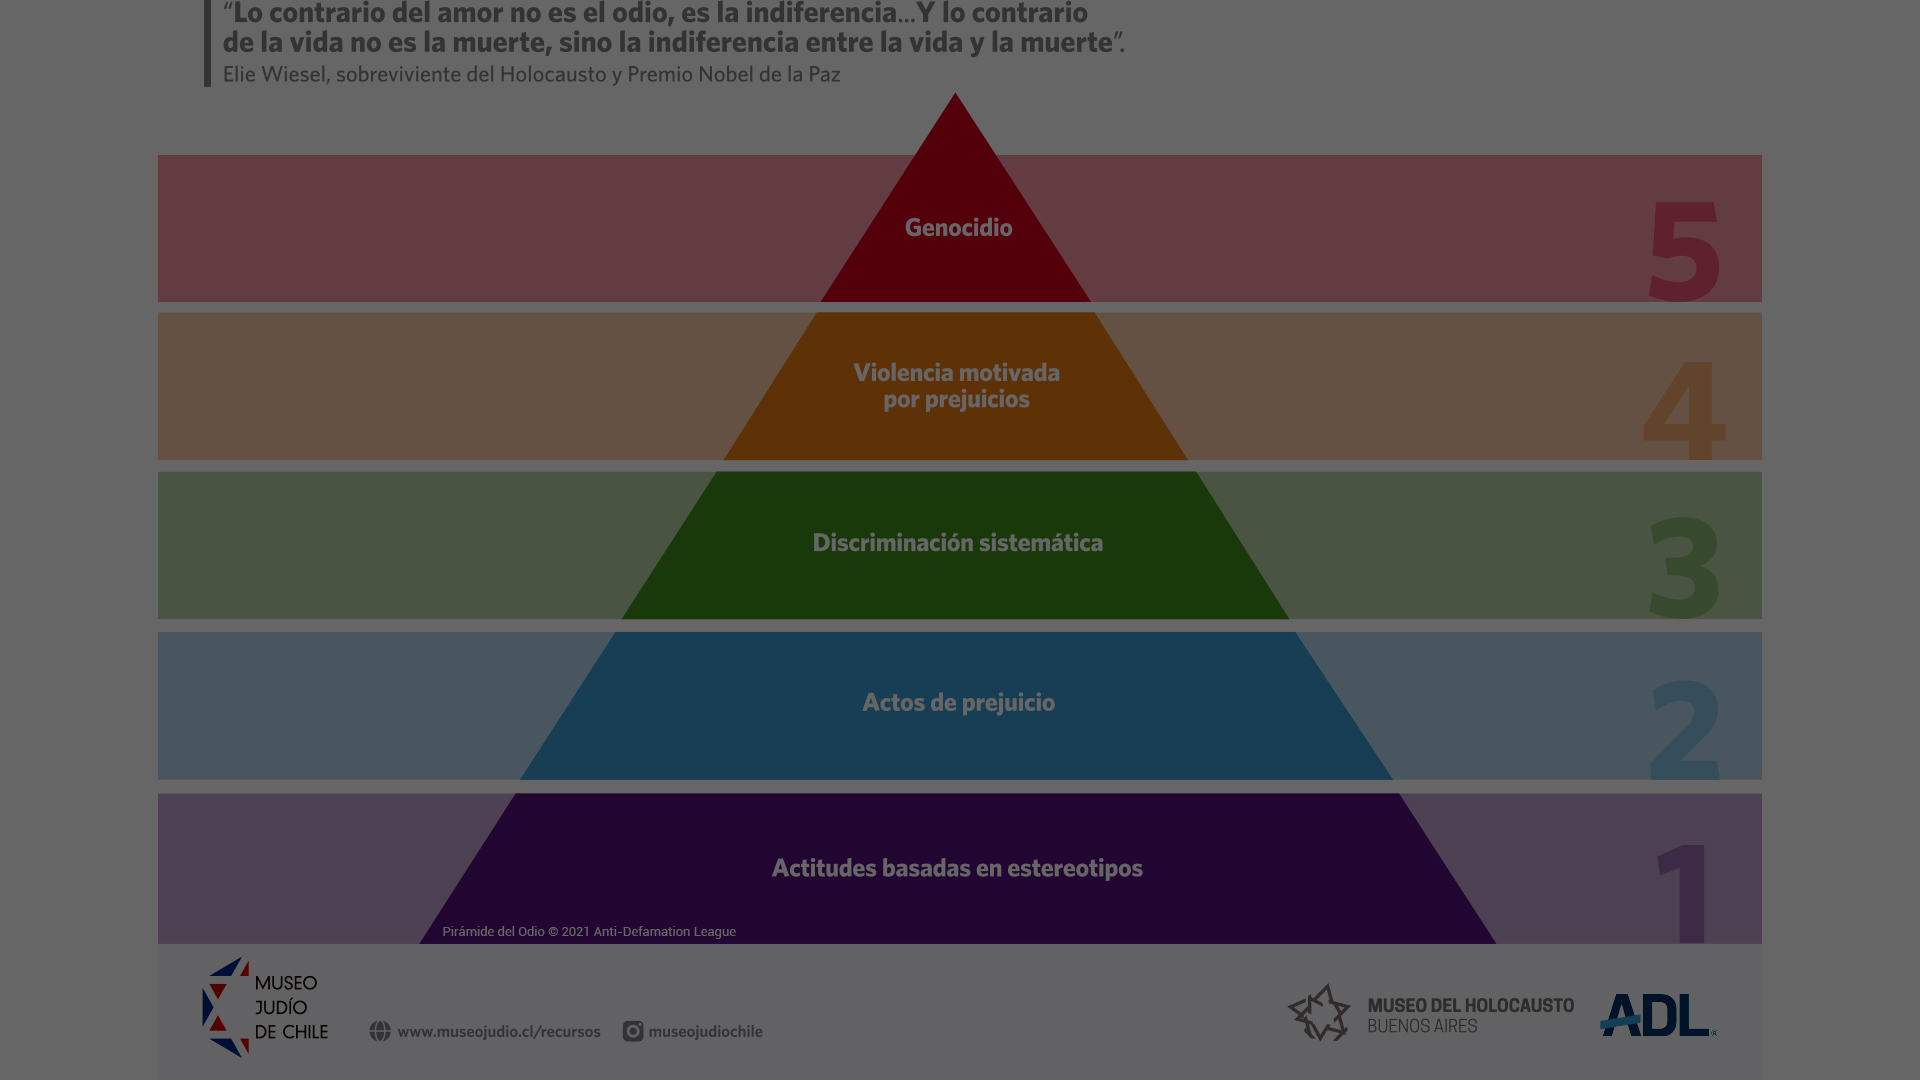  Secuencia didáctica  | Pirámide del odio